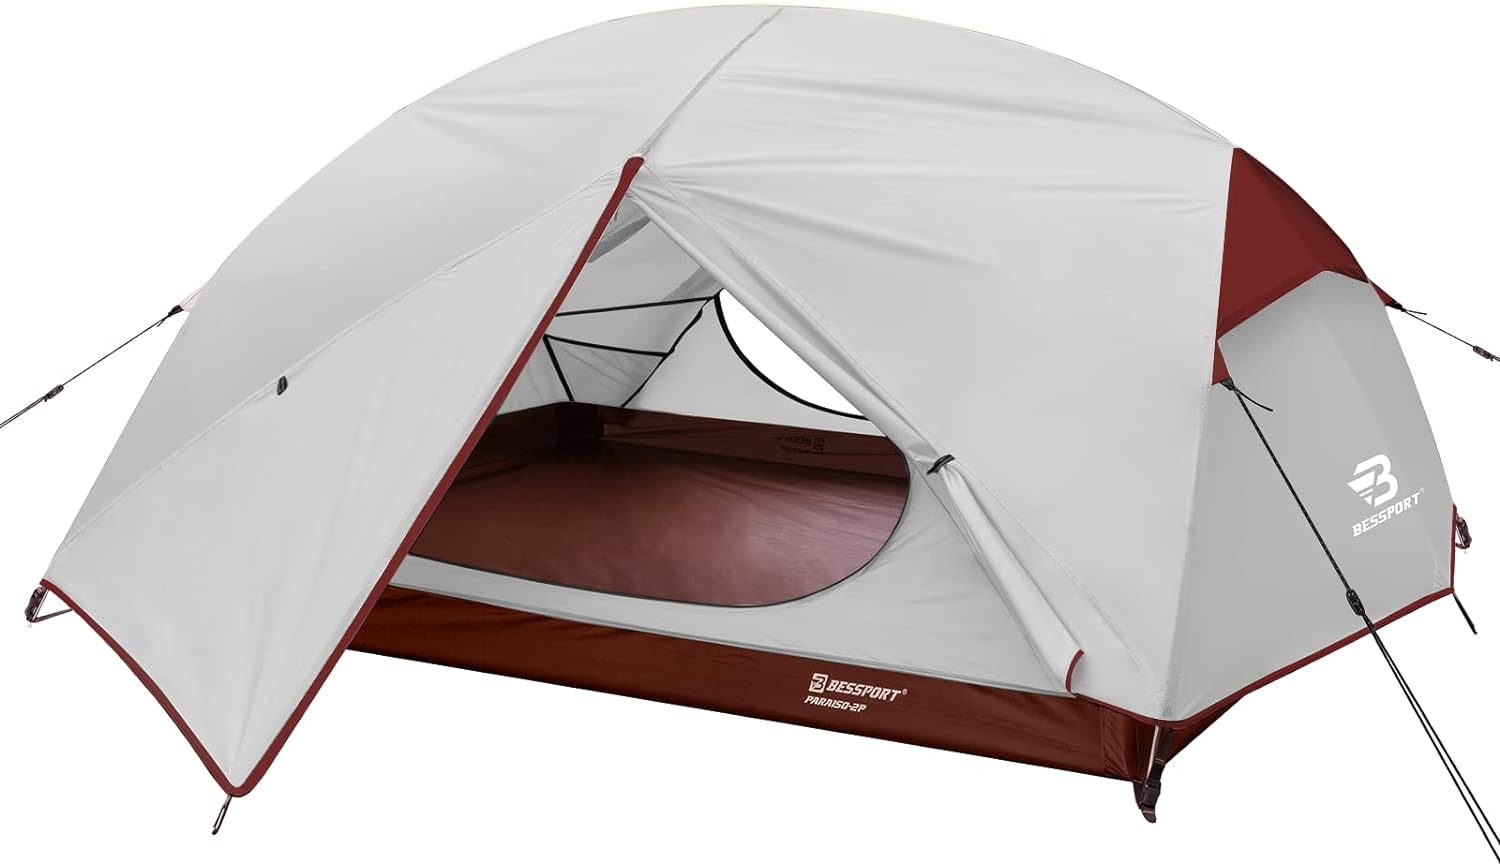 Lire la suite à propos de l’article Qui a inventé la tente de camping ?